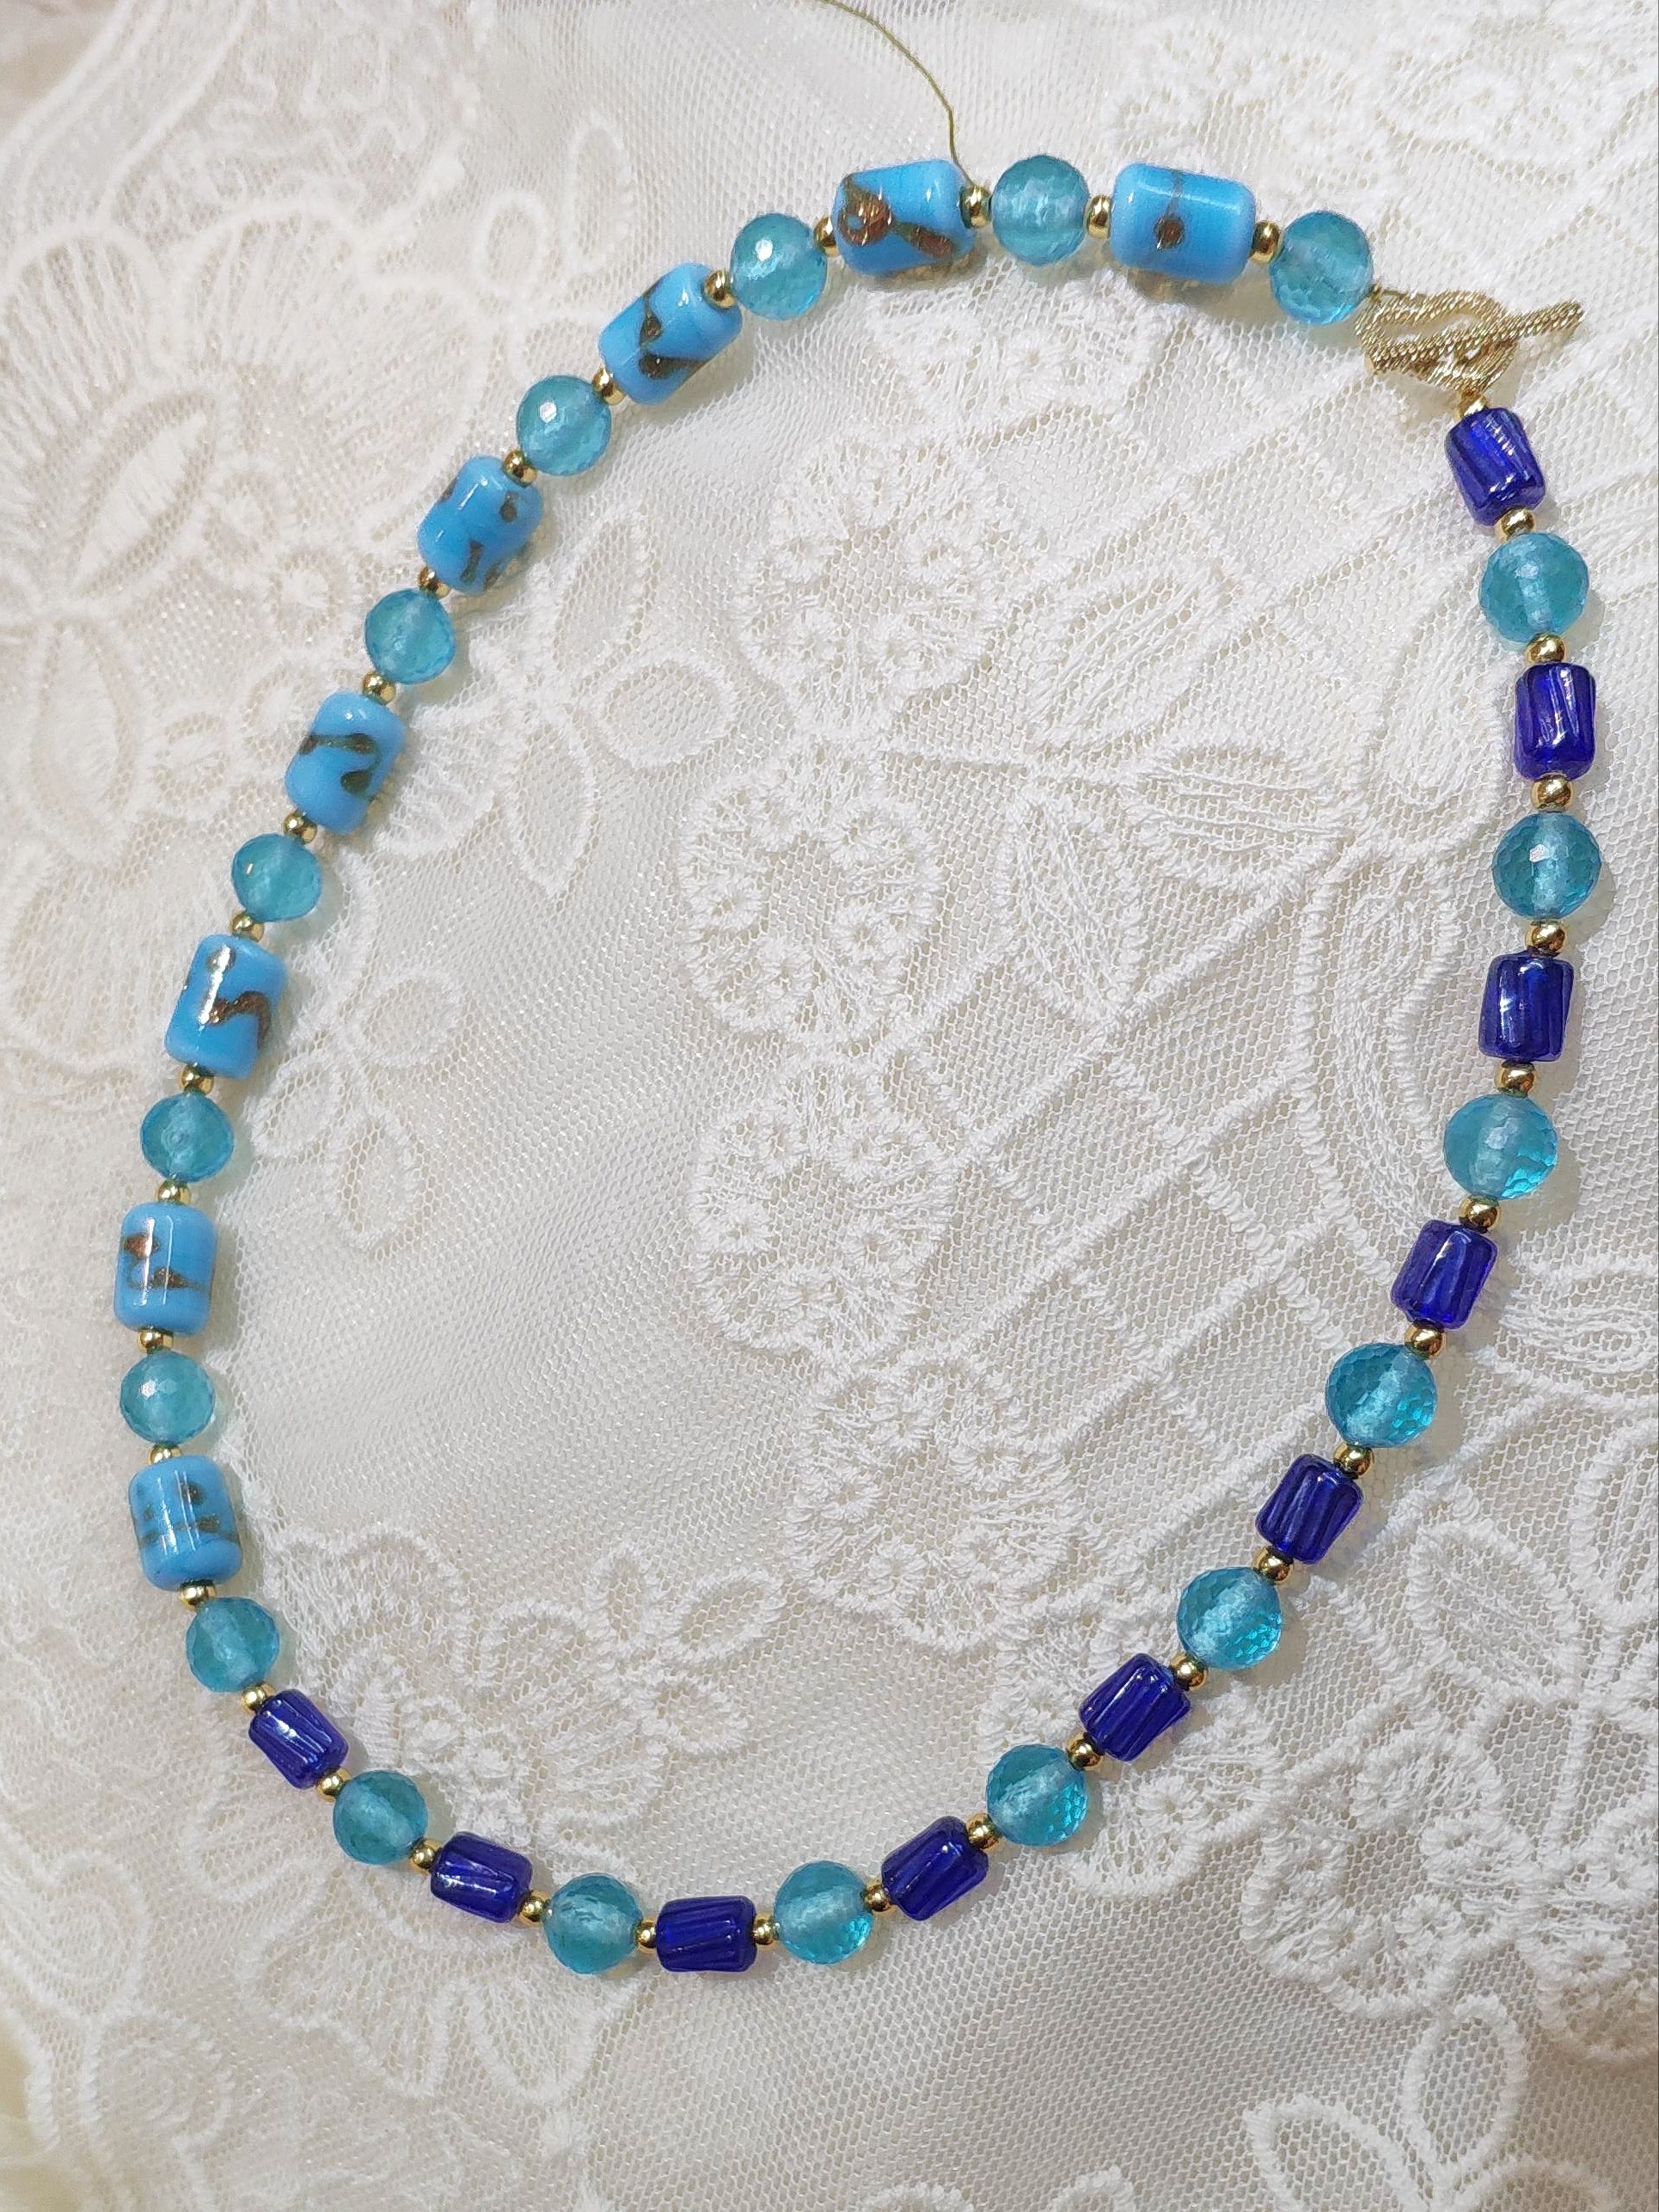 阔以手作「碧海蓝天」八十年代老琉璃原创设计项链沧桑的古珠质感